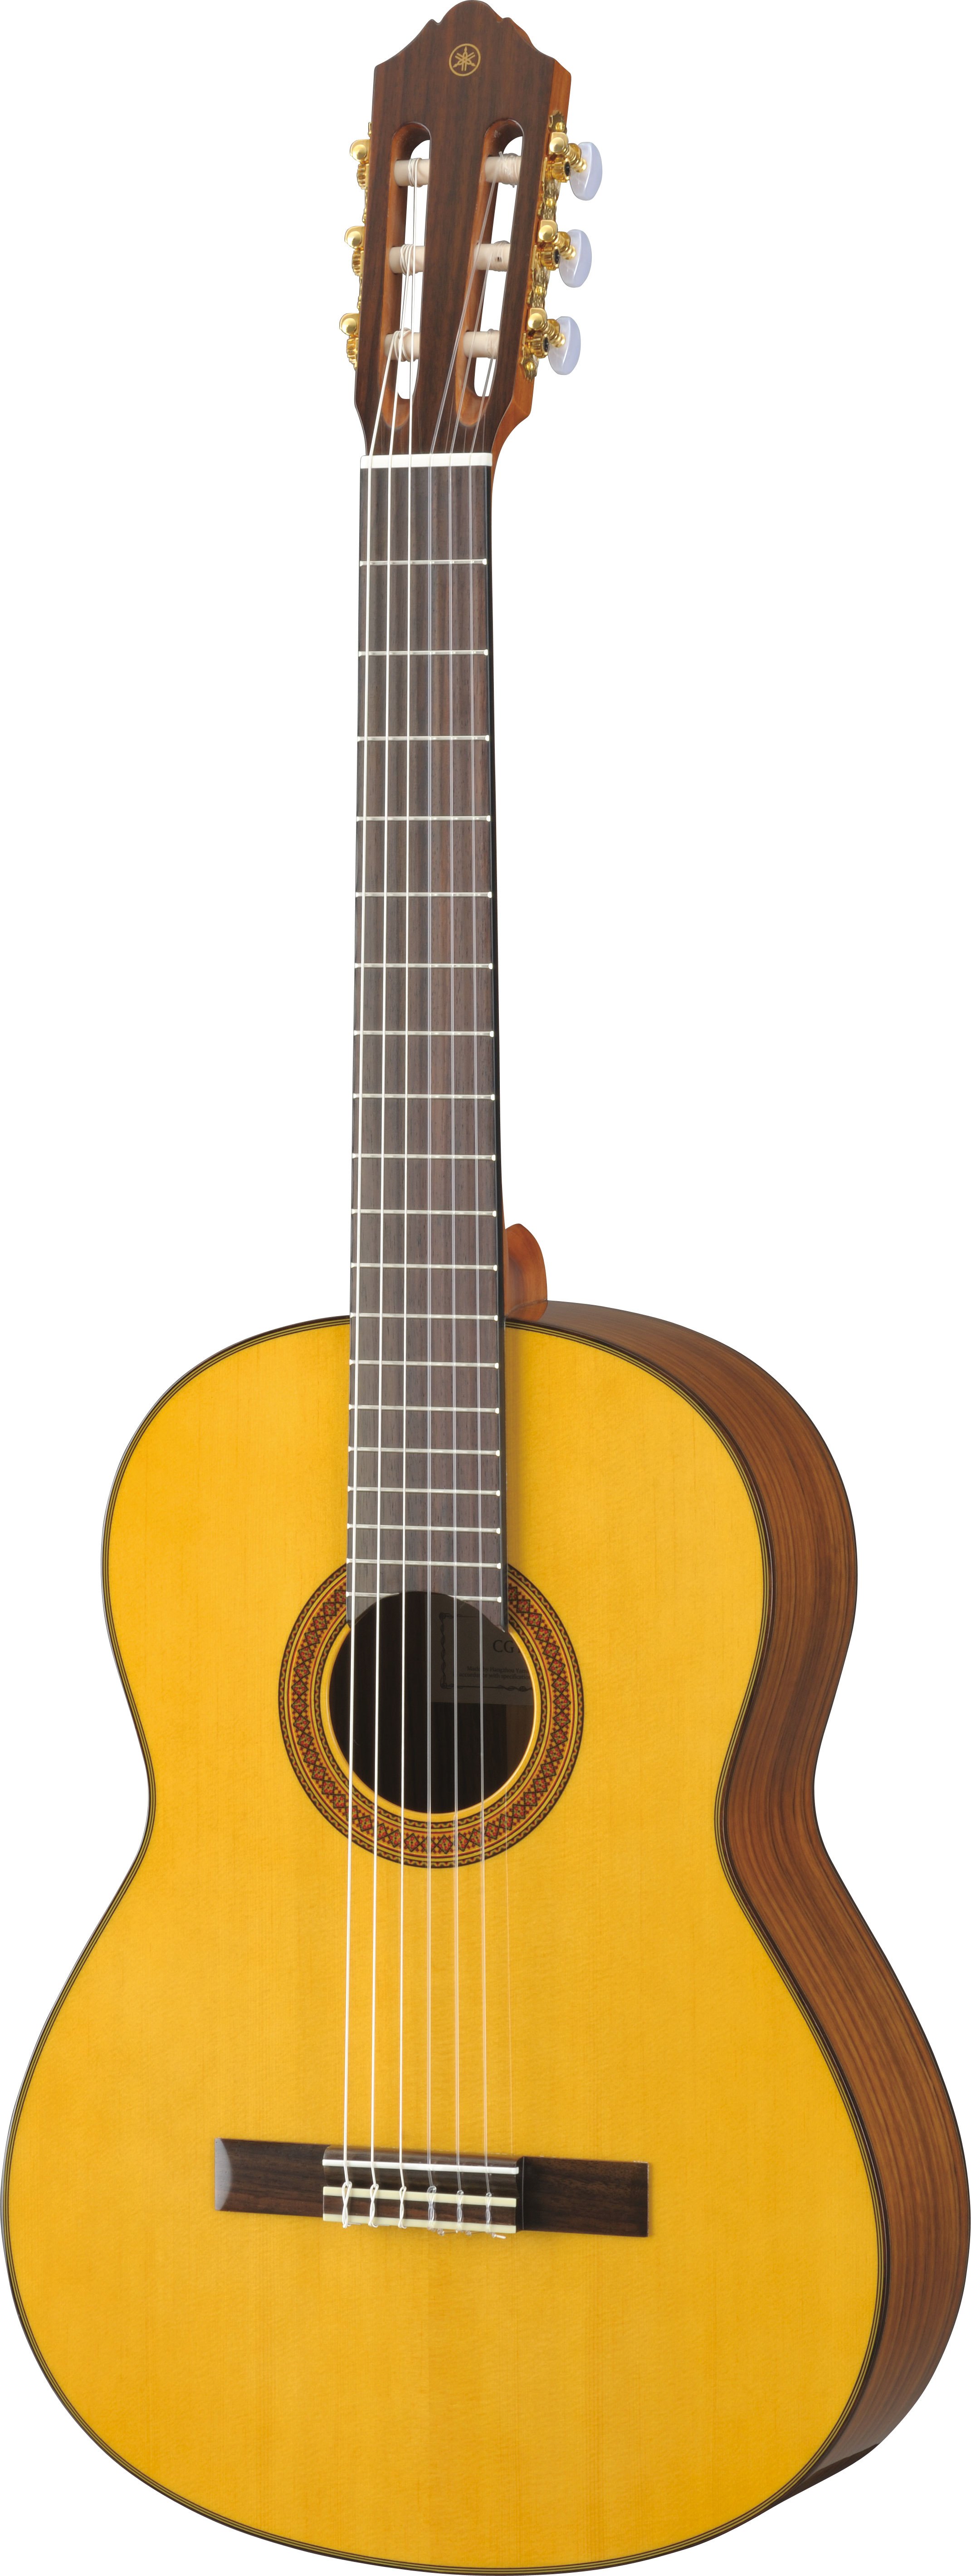 YAMAHA CG-201S クラシックギター ガットギター - アコースティックギター